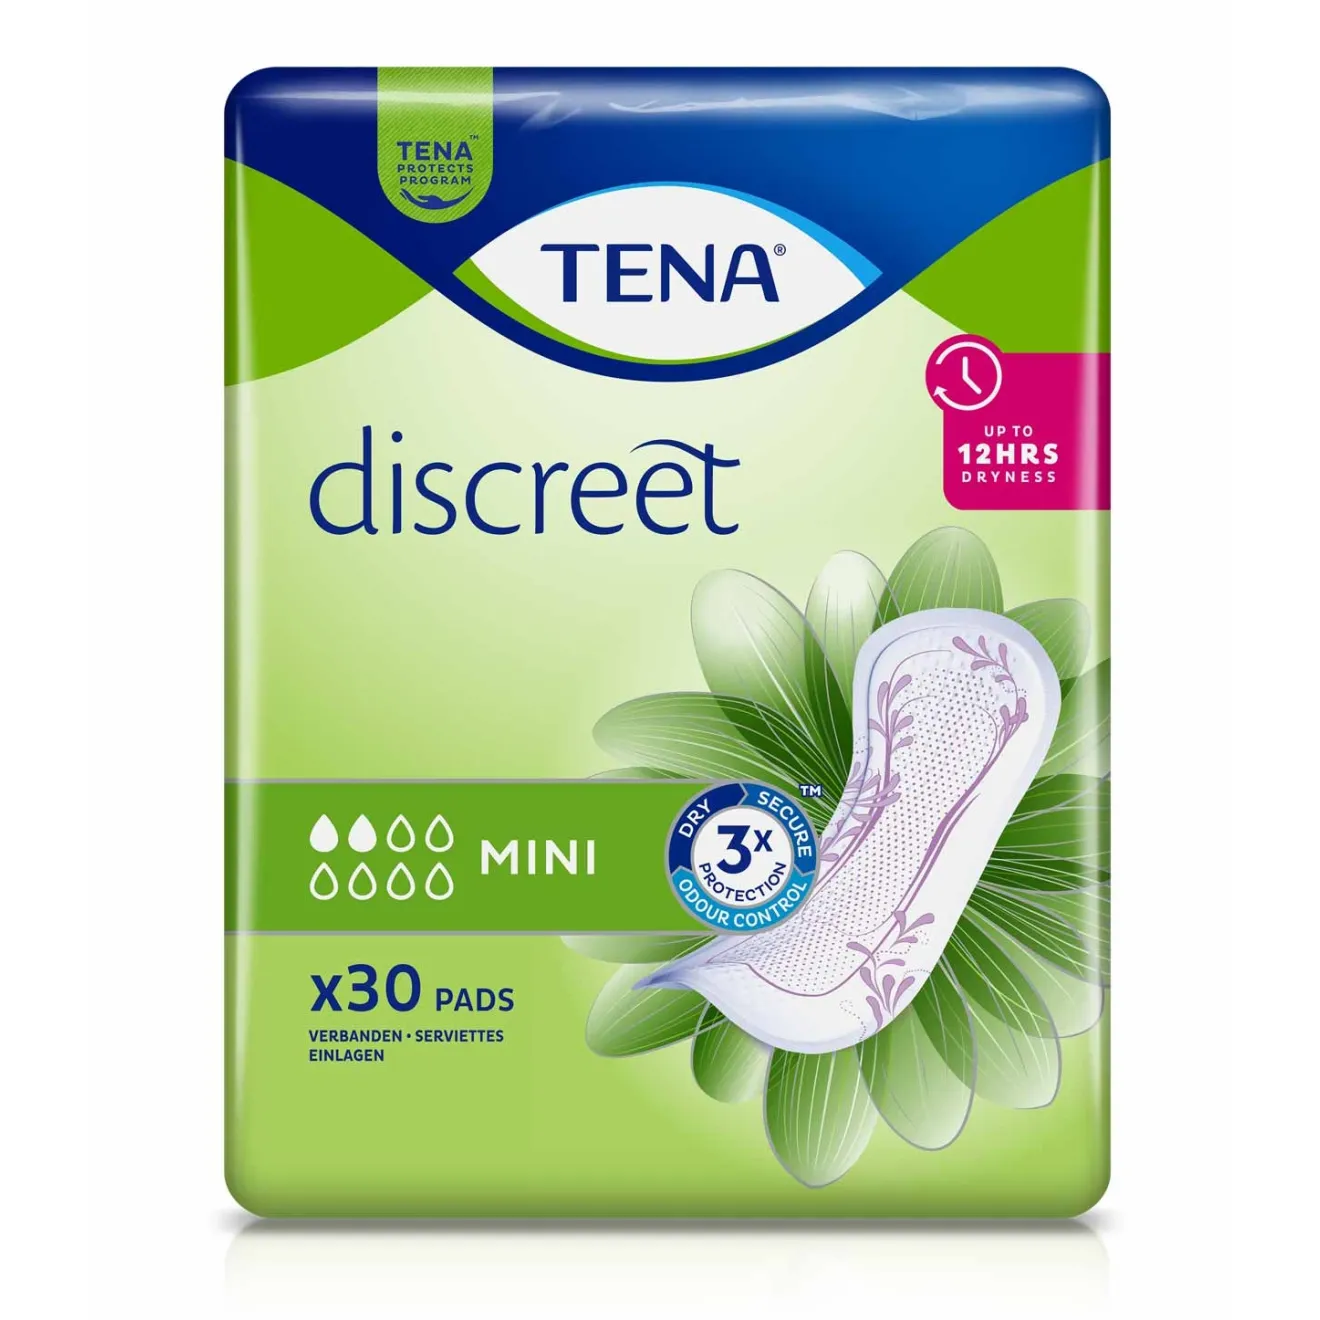 TENA Discreet Inkontinenz Einlagen mini 30 ST